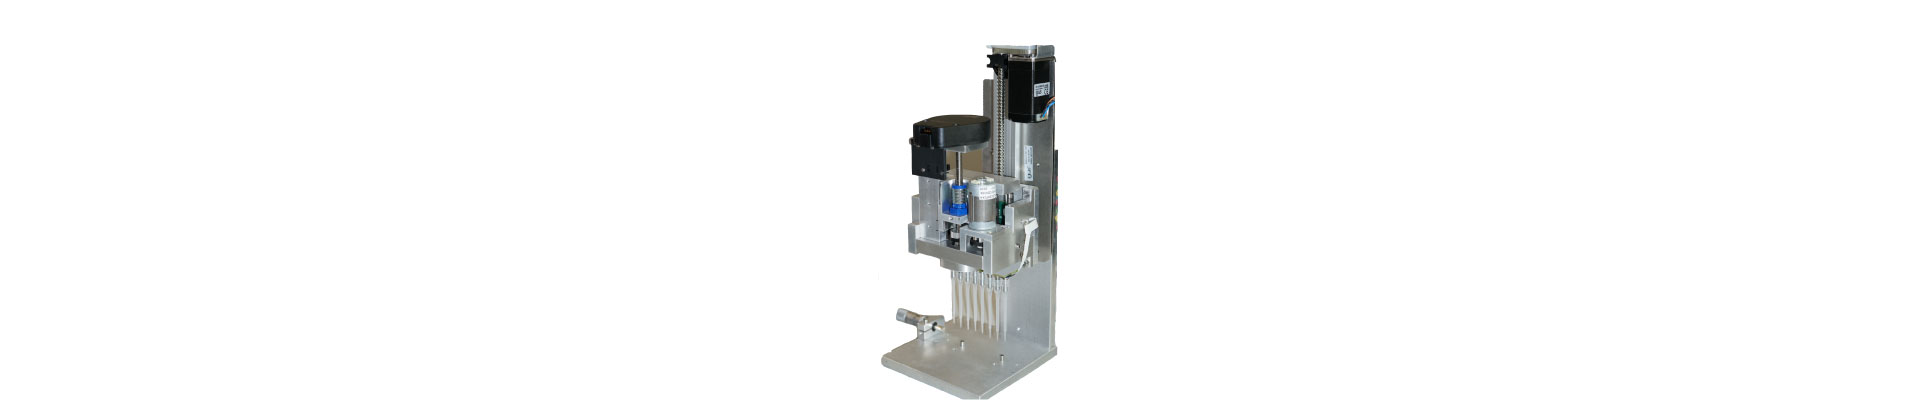 air displacement pump